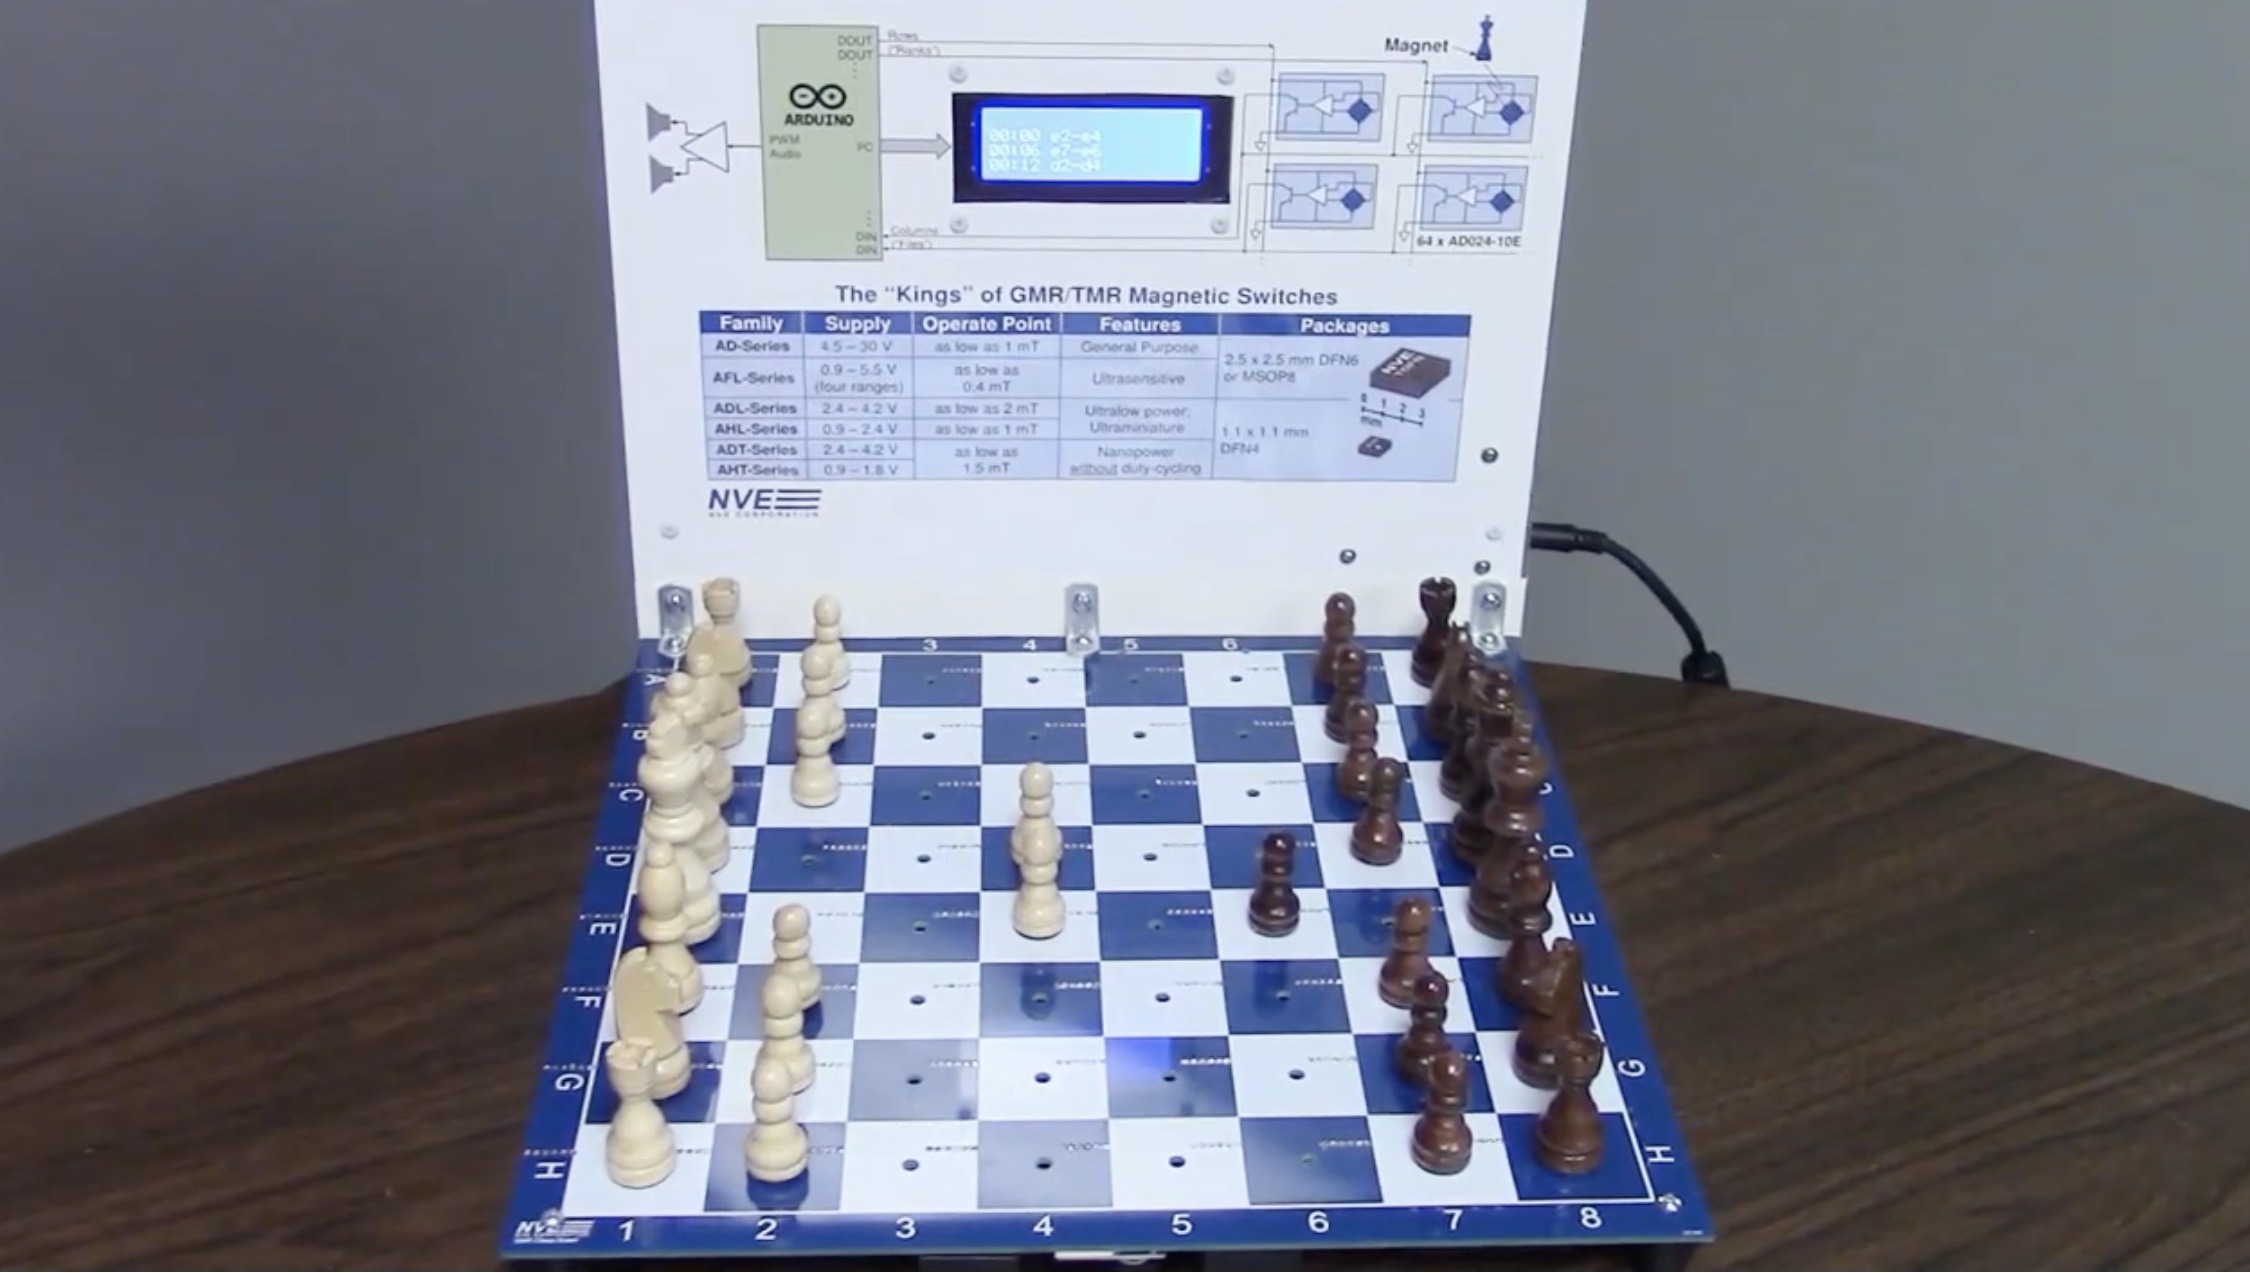 Praktische Magnetschalter machen dieses elektronische Schachbrett möglich